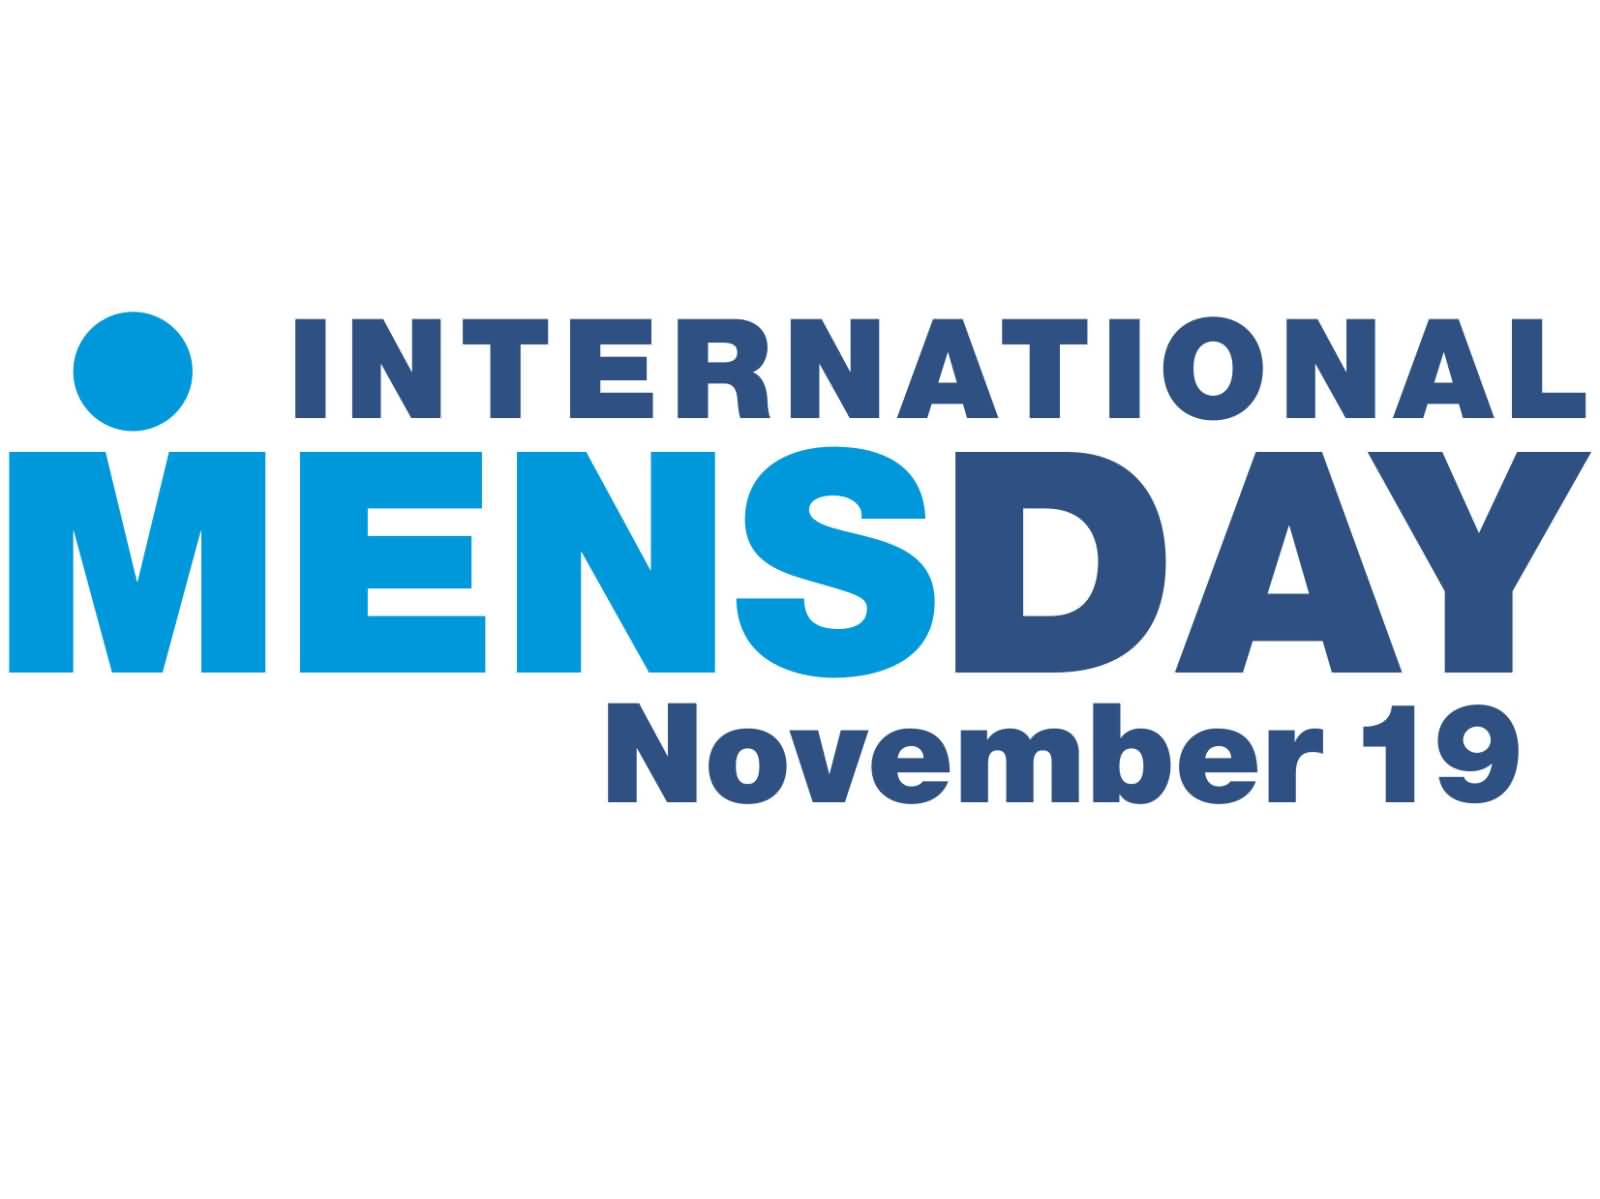 International Men's Day November 19